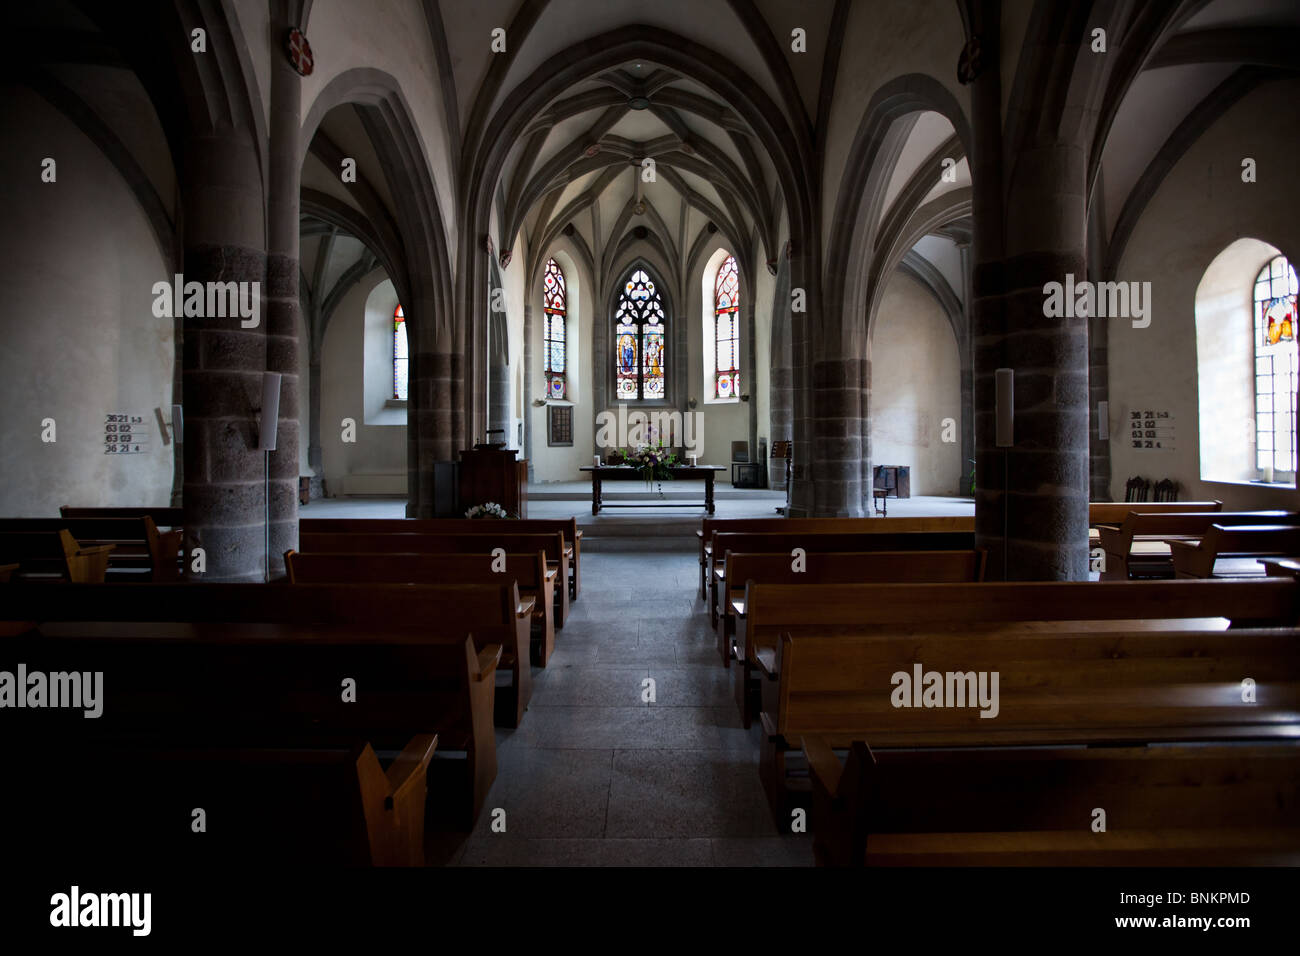 Church of St. Saphorin, St. Saphorin, Lavaux, lake Geneva, Switzerland Stock Photo